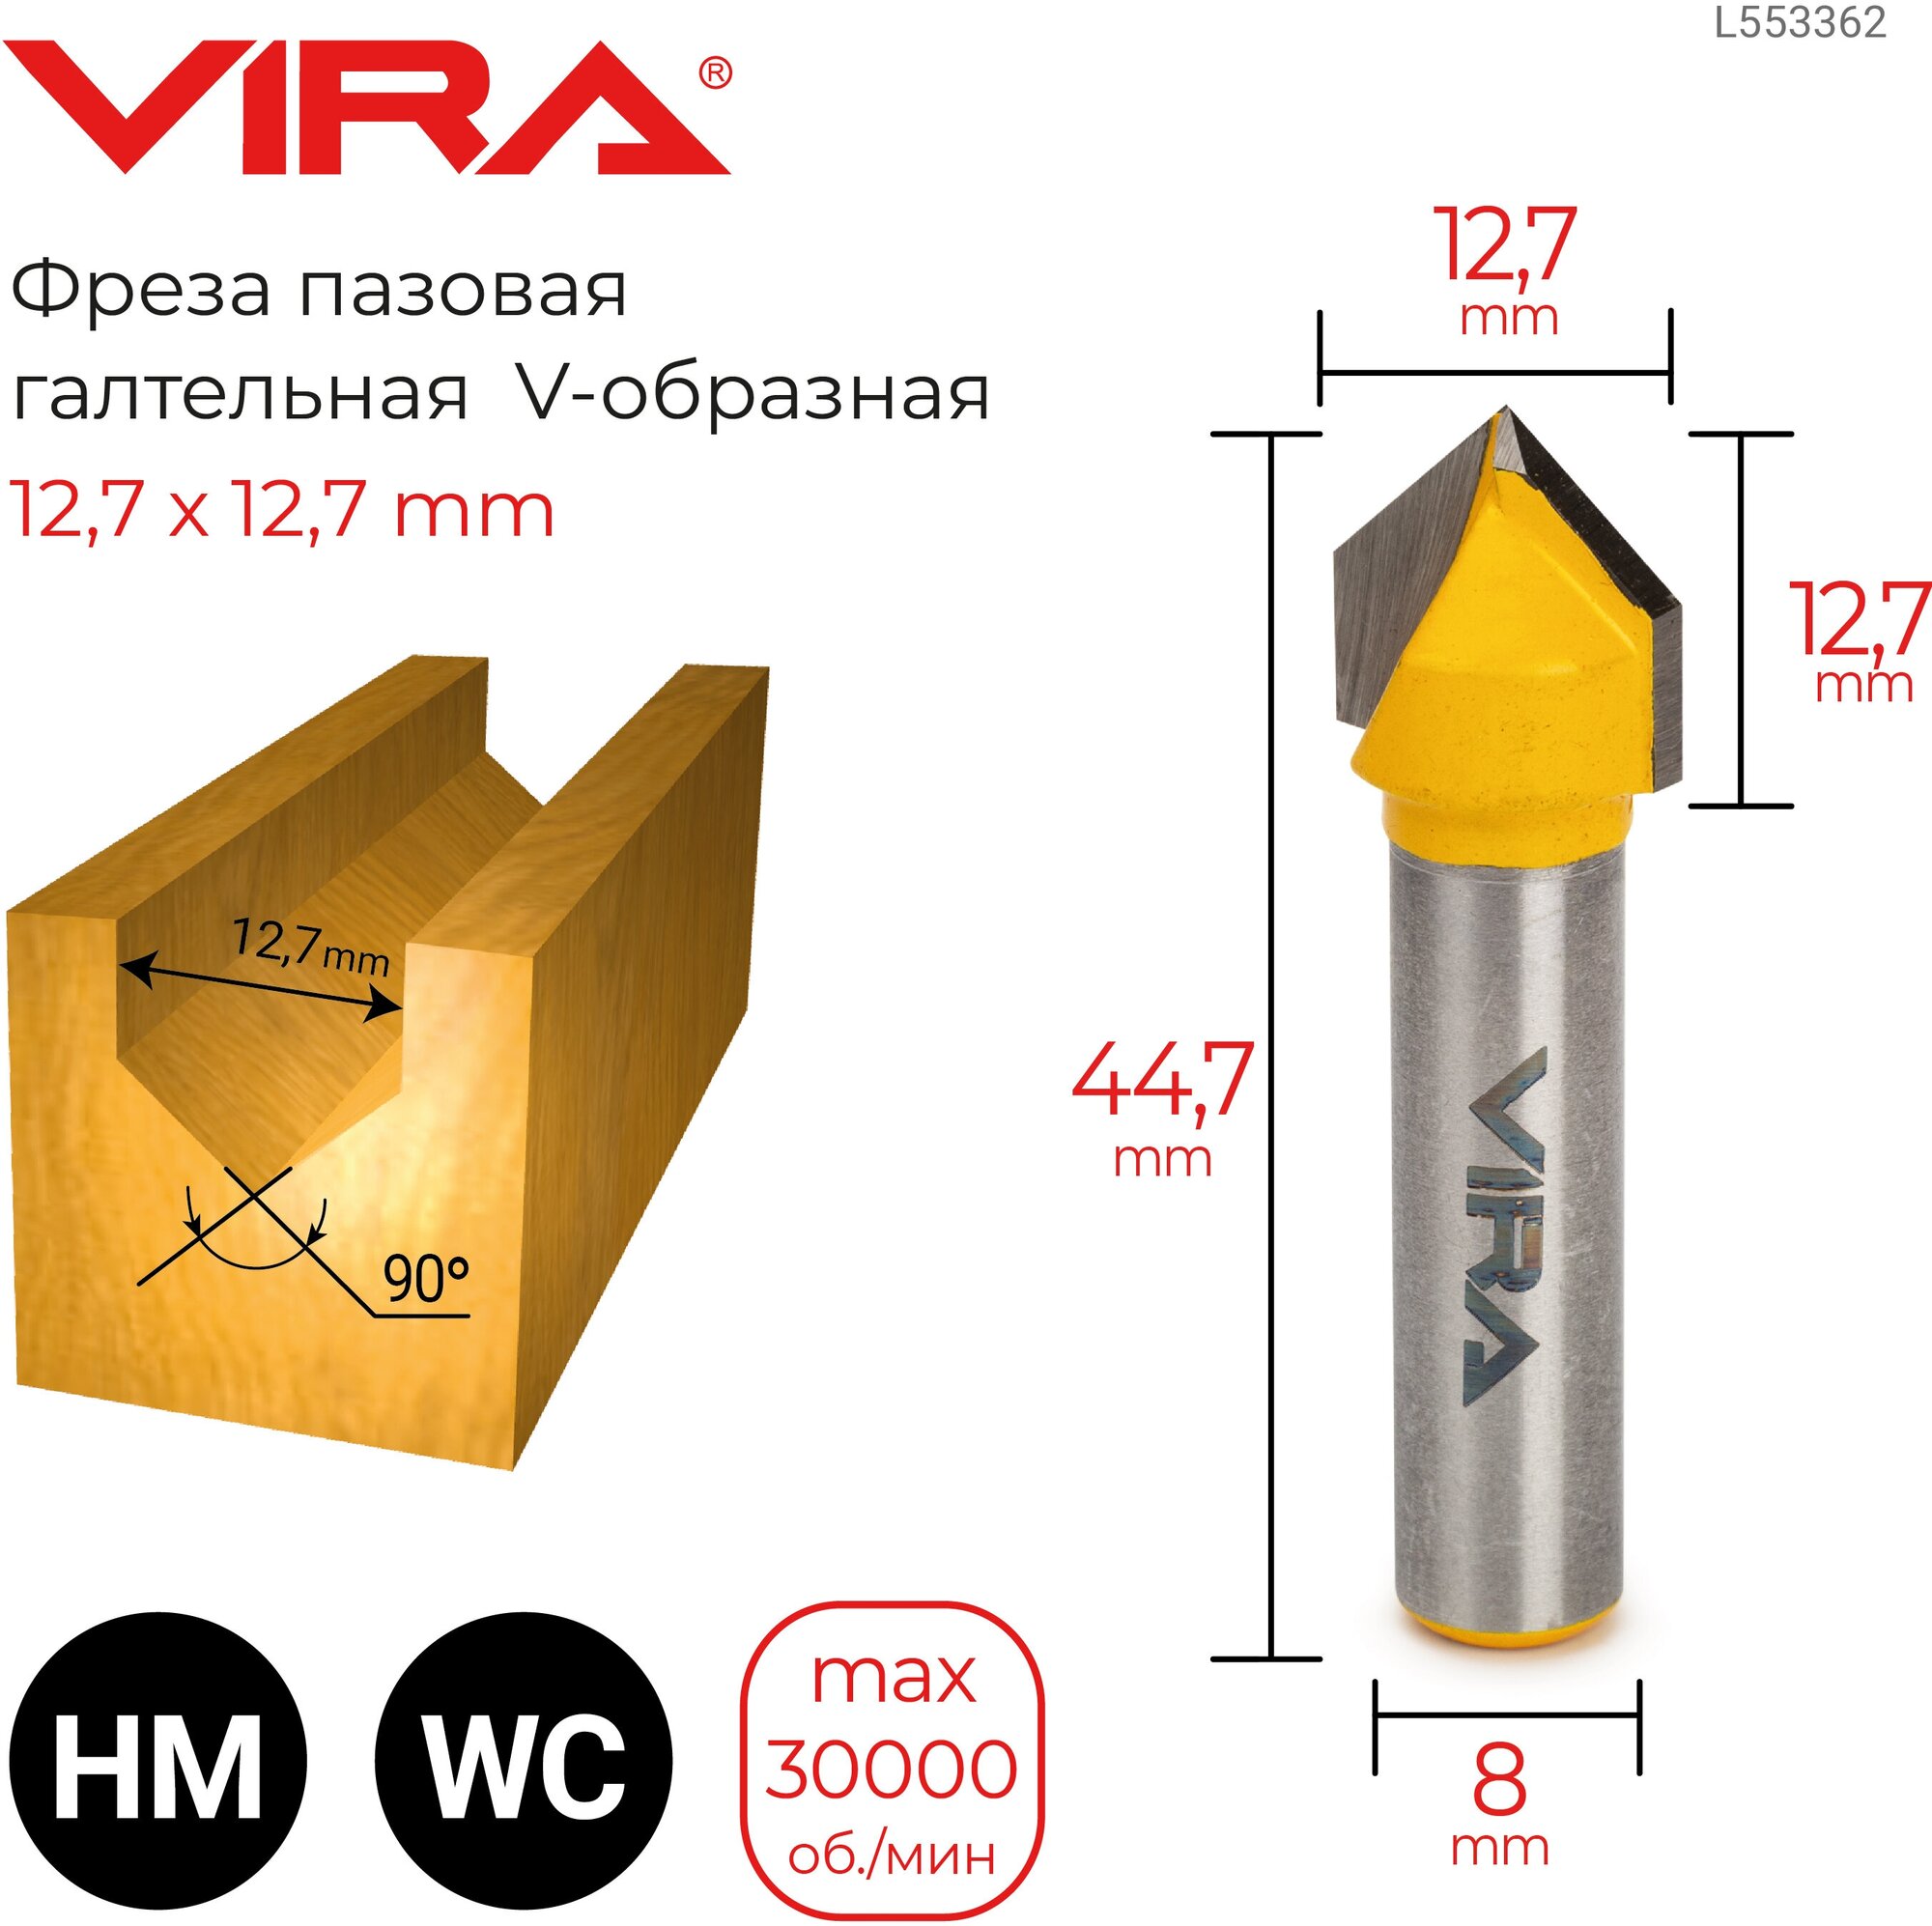 VIRA Фреза пазовая галтельная V-образная 90° 12.7 х 12.7 мм, хвостовик 8 мм 553362